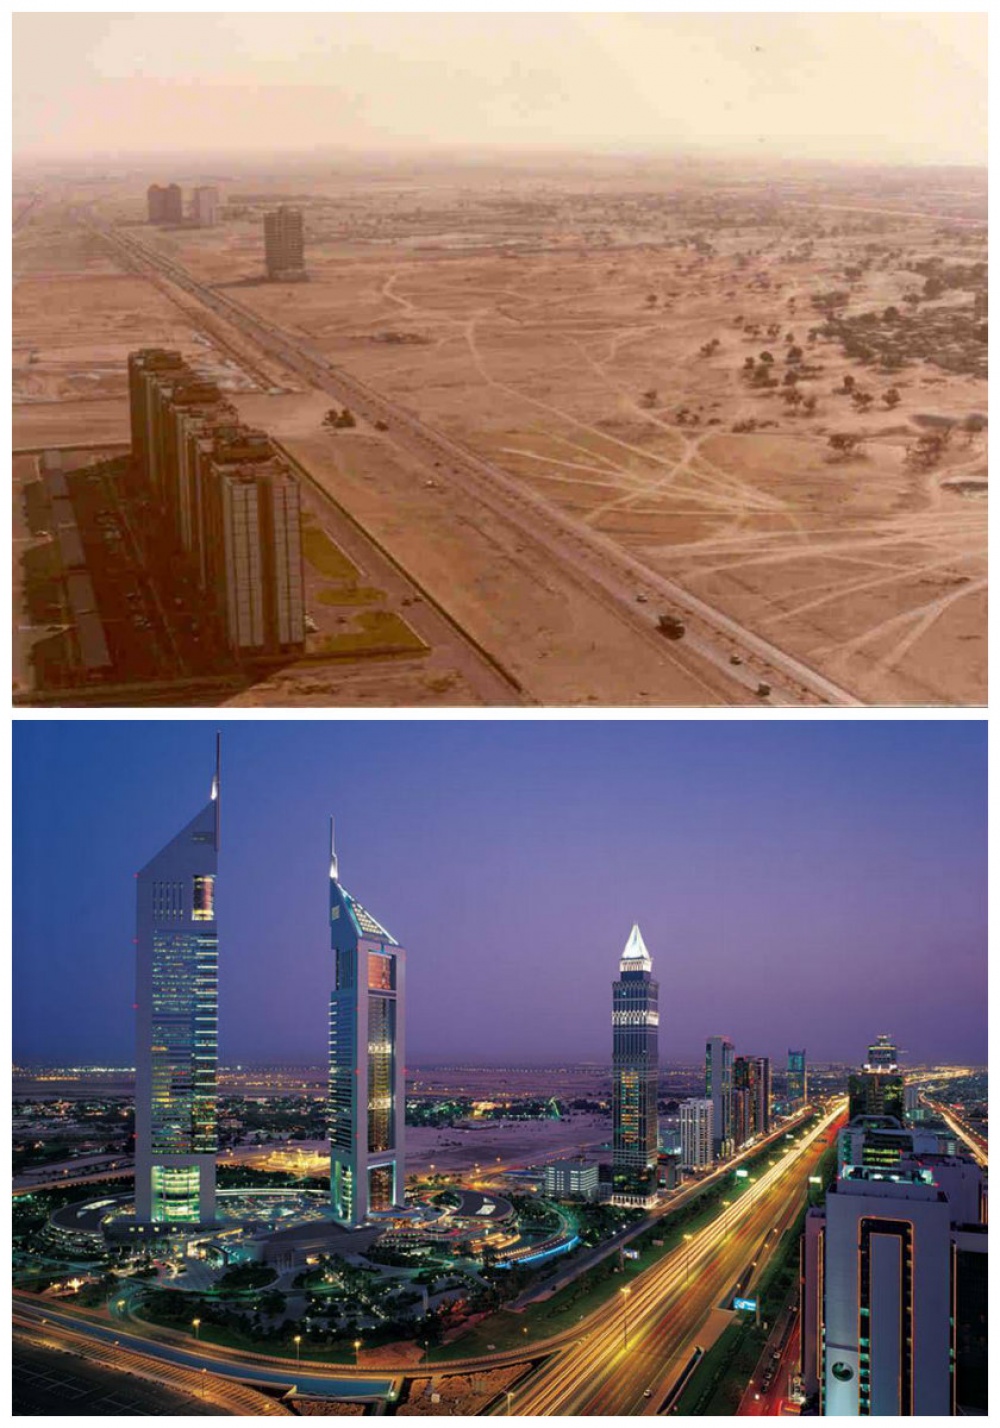 Η εκπληκτική αλλαγή των μεγαλύτερων πόλεων με το πέρασμα του χρόνου - Εικόνα 10